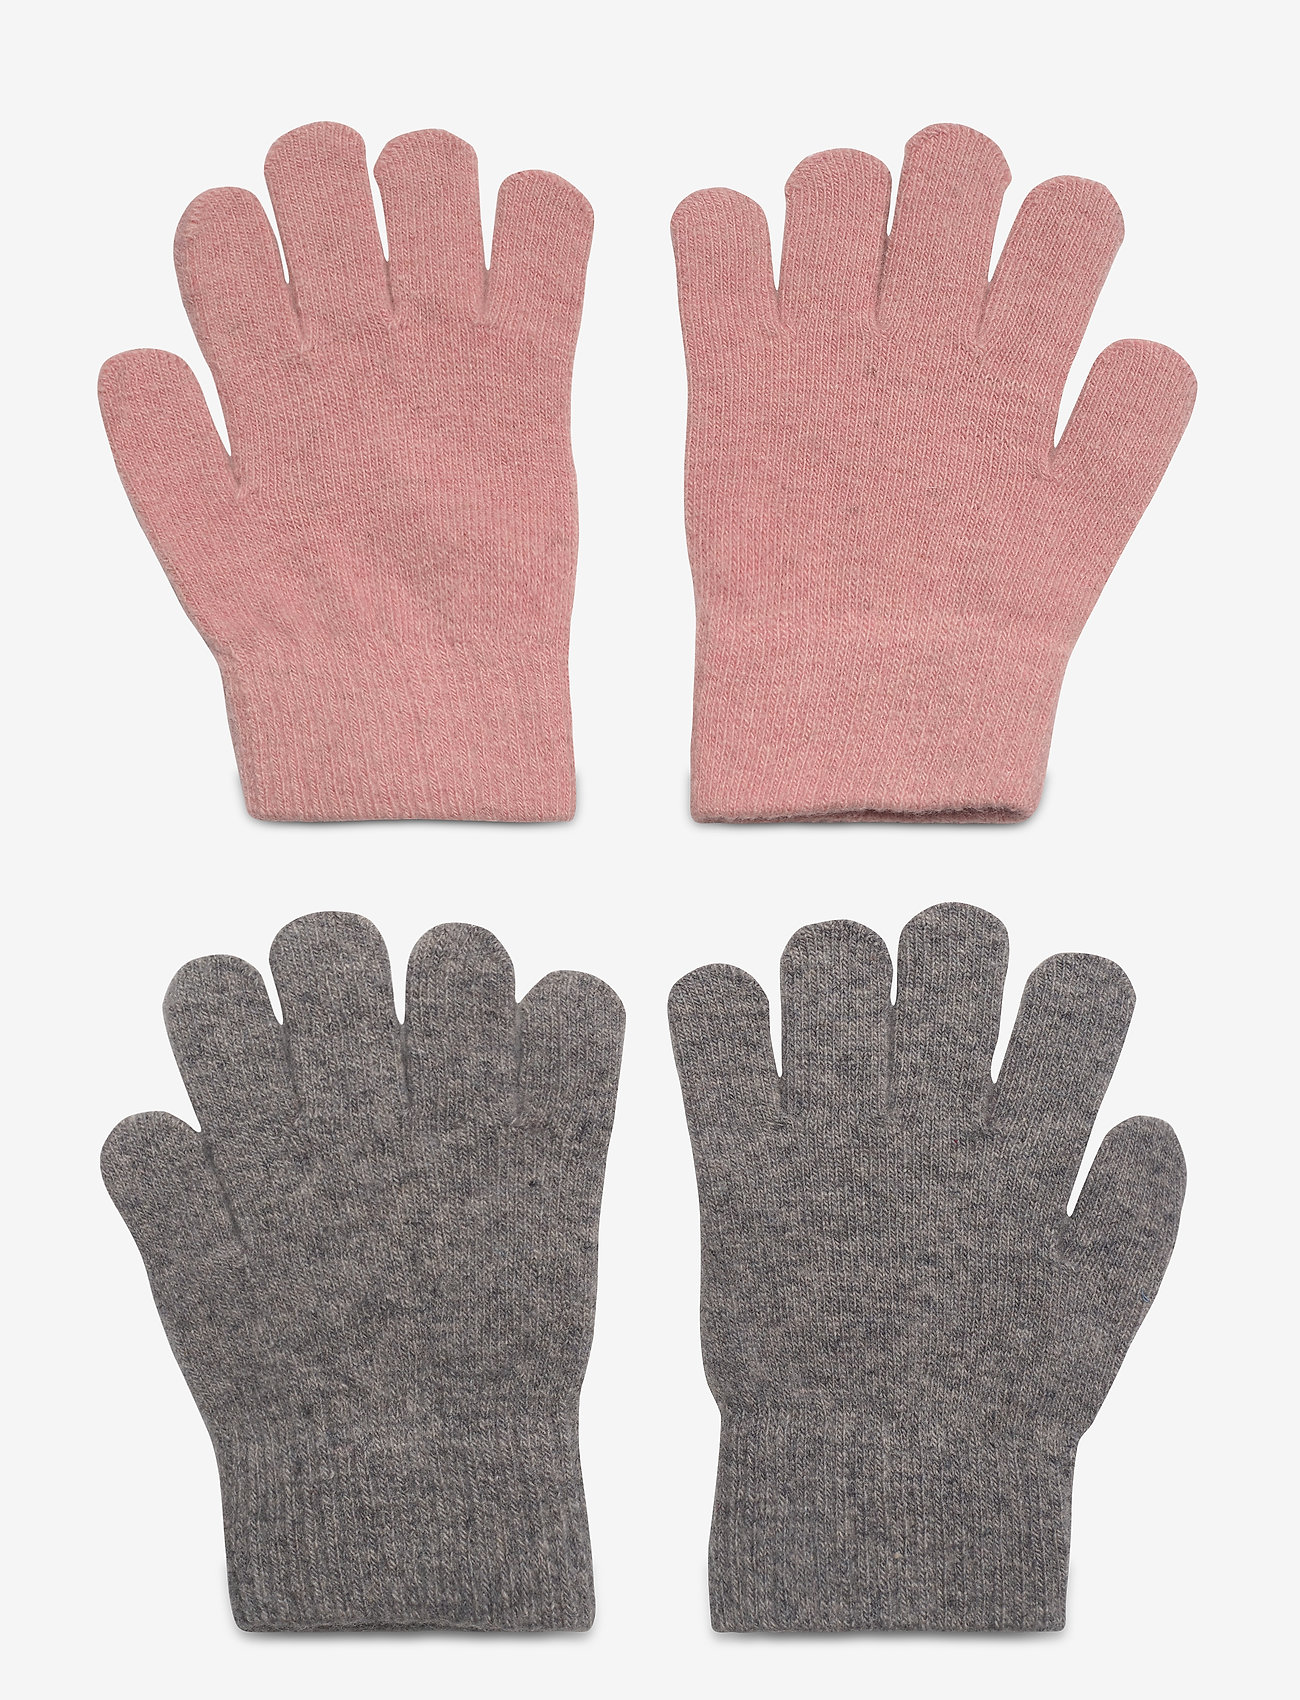 CeLaVi - Magic Gloves 2-pack - najniższe ceny - misty rose - 1